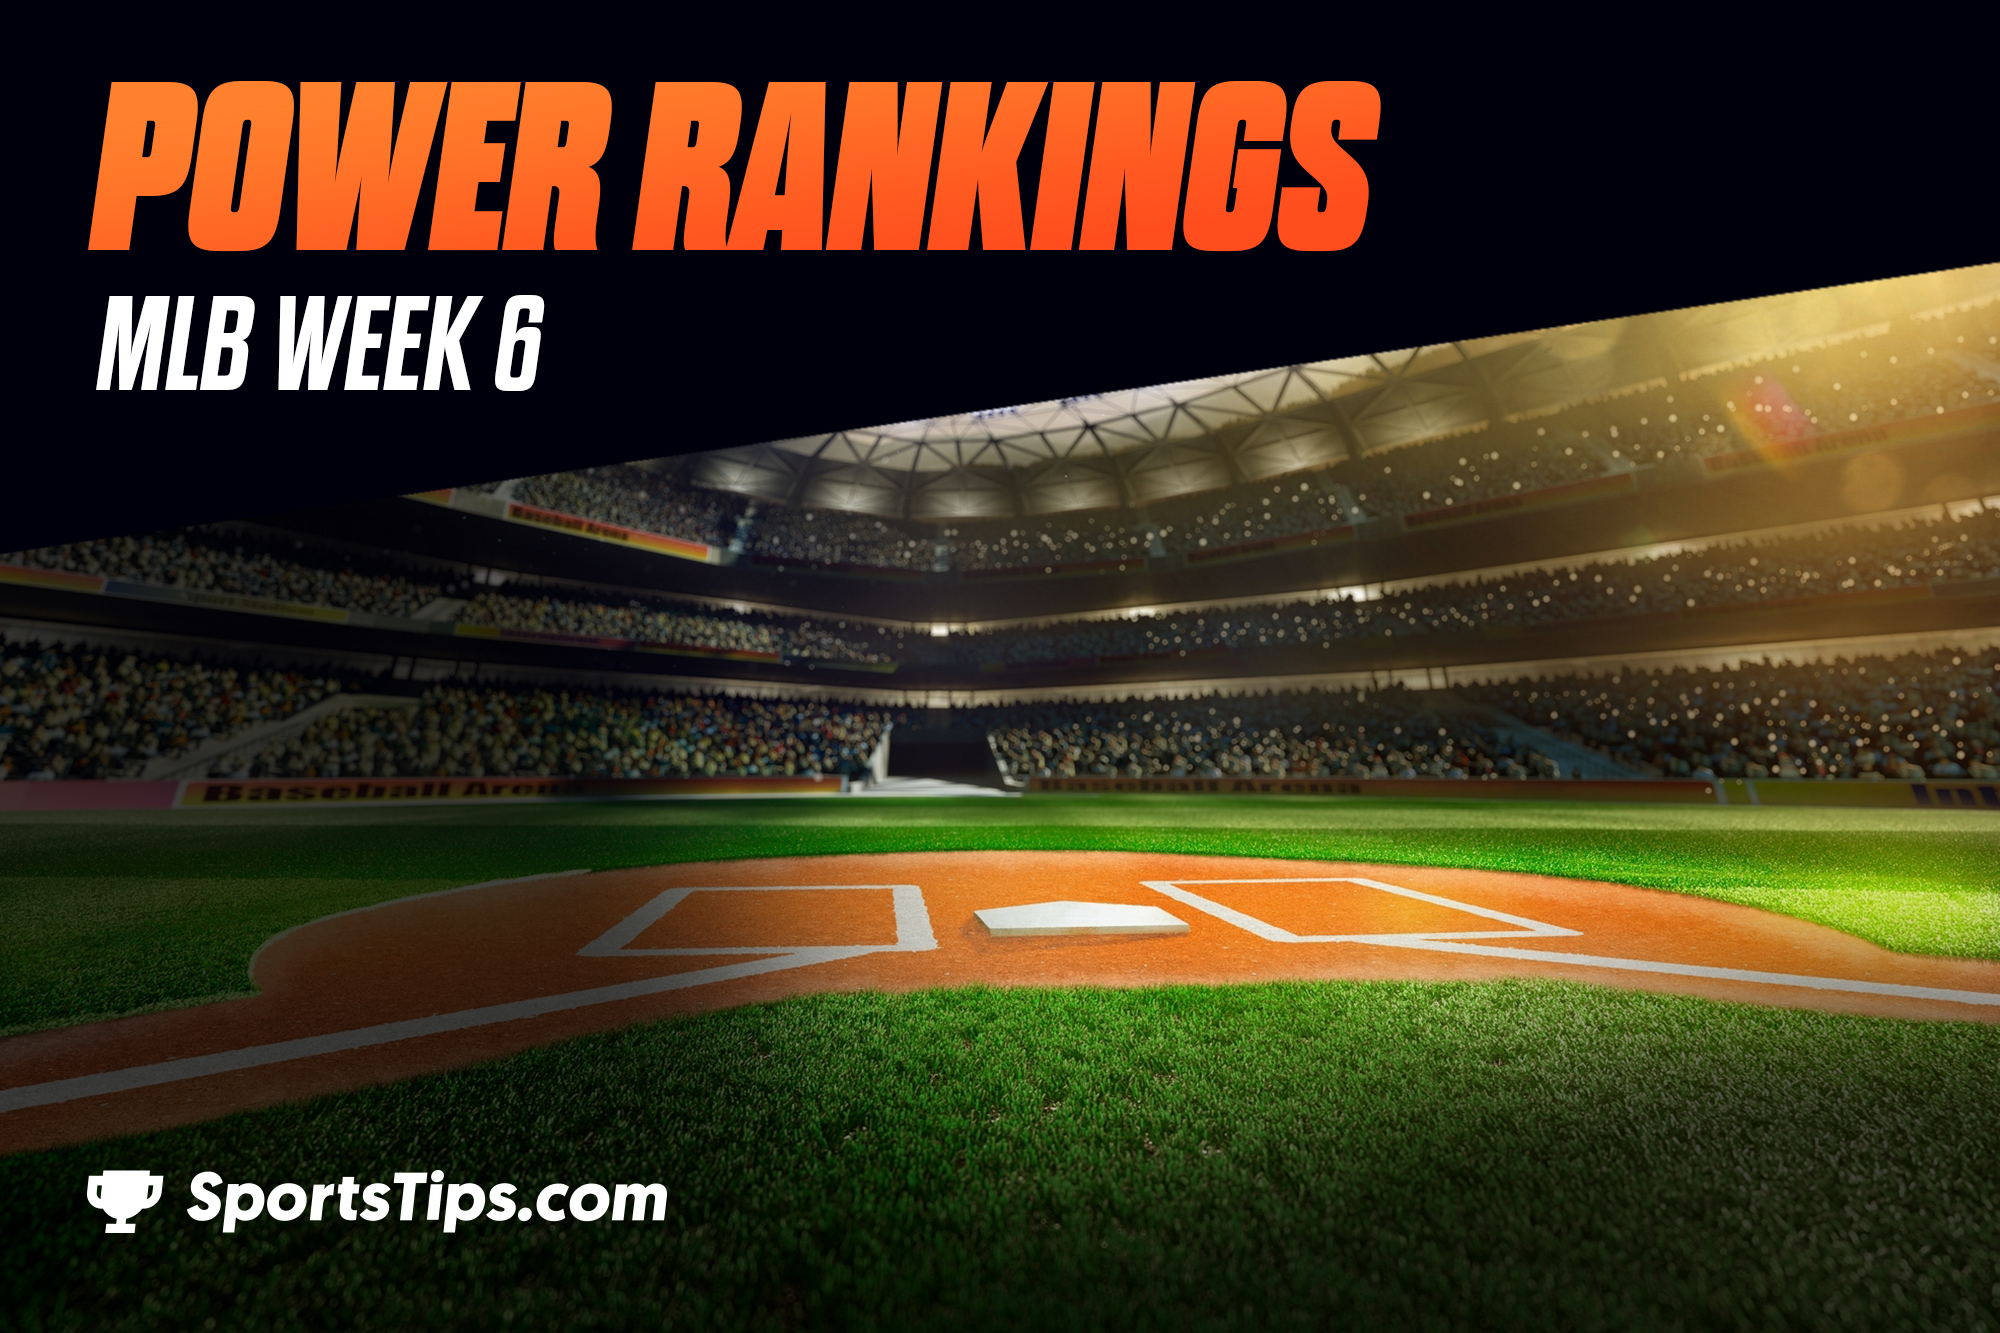 SportsTips’ MLB Power Rankings 2021: Week 6